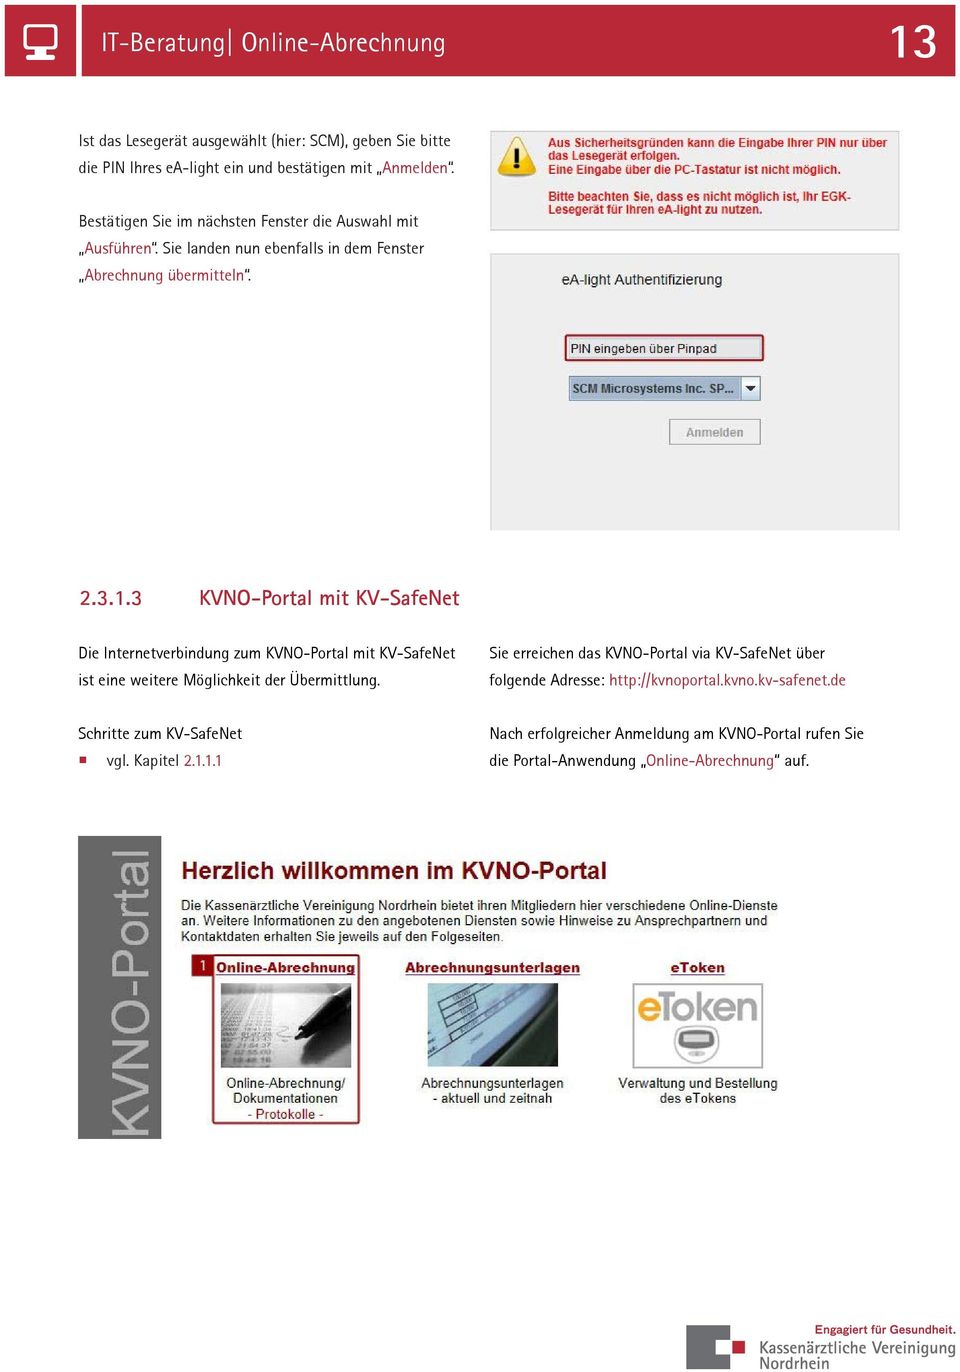 3 KVNO-Portal mit KV-SafeNet Die Internetverbindung zum KVNO-Portal mit KV-SafeNet ist eine weitere Möglichkeit der Übermittlung.